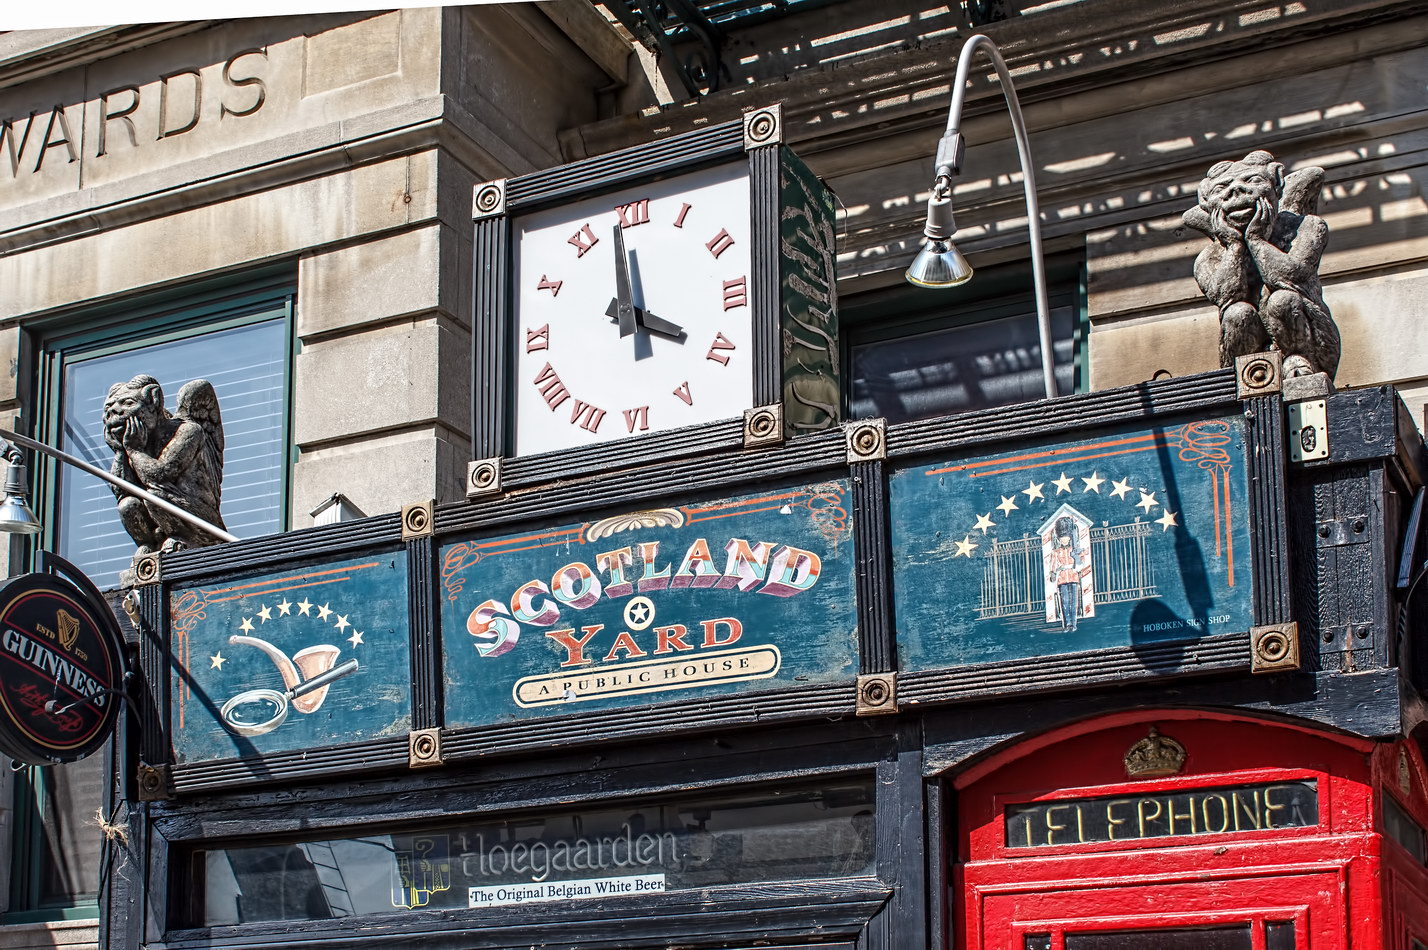 Scotland Yard pub